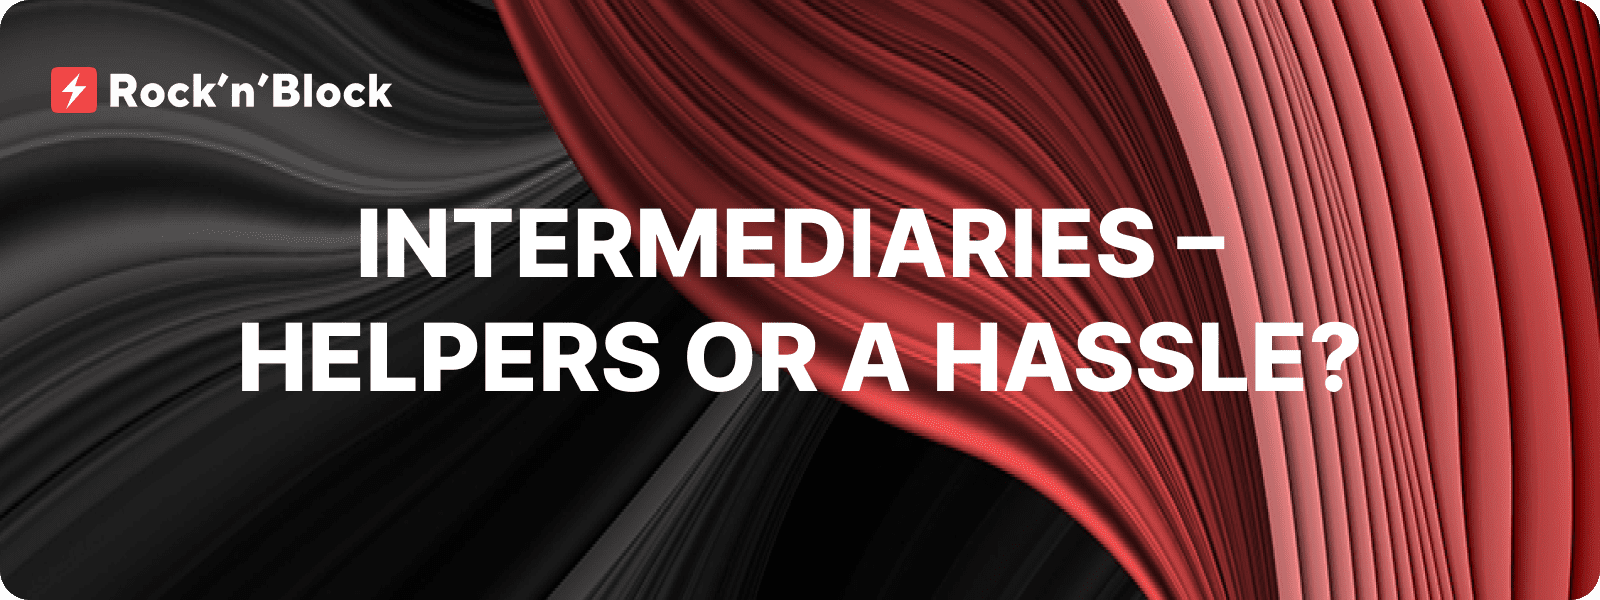 Intermediaries – Helpers or a Hassle?